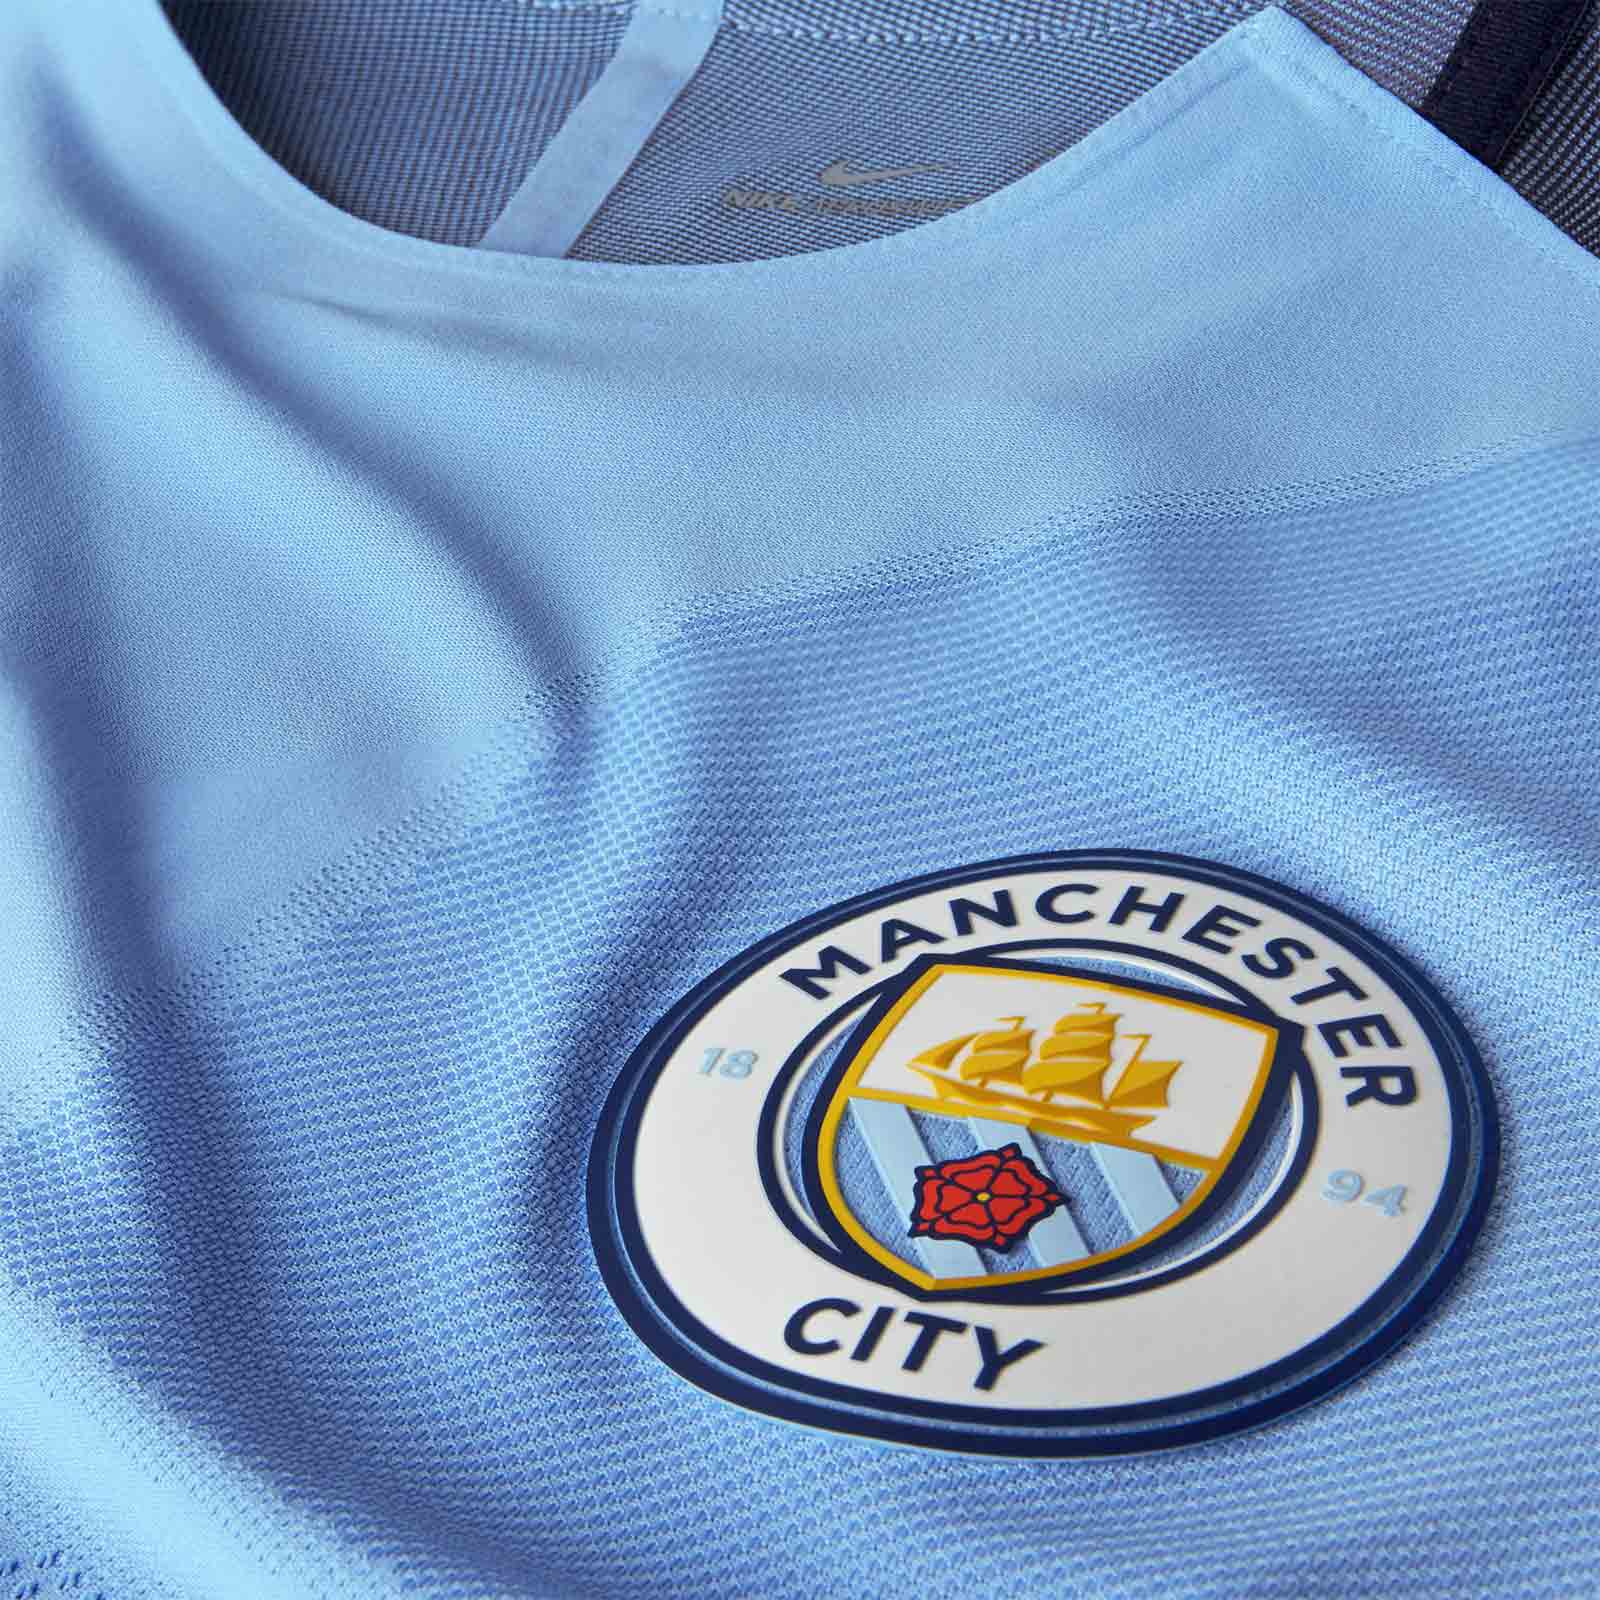 Camisetas de Futbol baratas Comprar Ahora!!!: Nueva Camisetas Futbol Equipos Manchester City ...